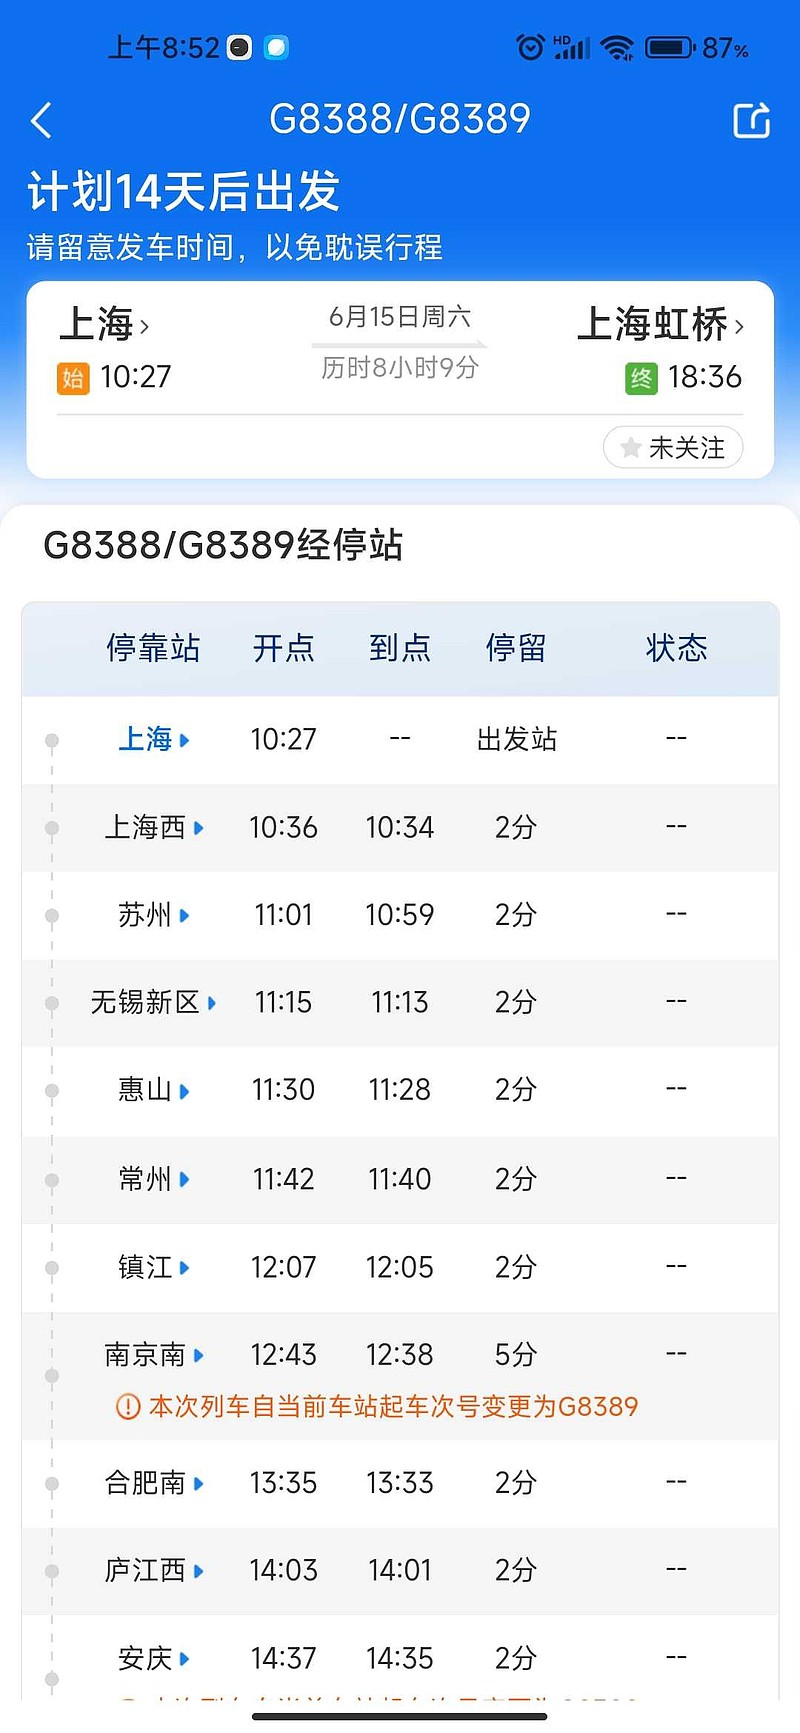 上海铁路局终于想明白了,自己下属的江浙沪区域铁路发达,高铁发达,早